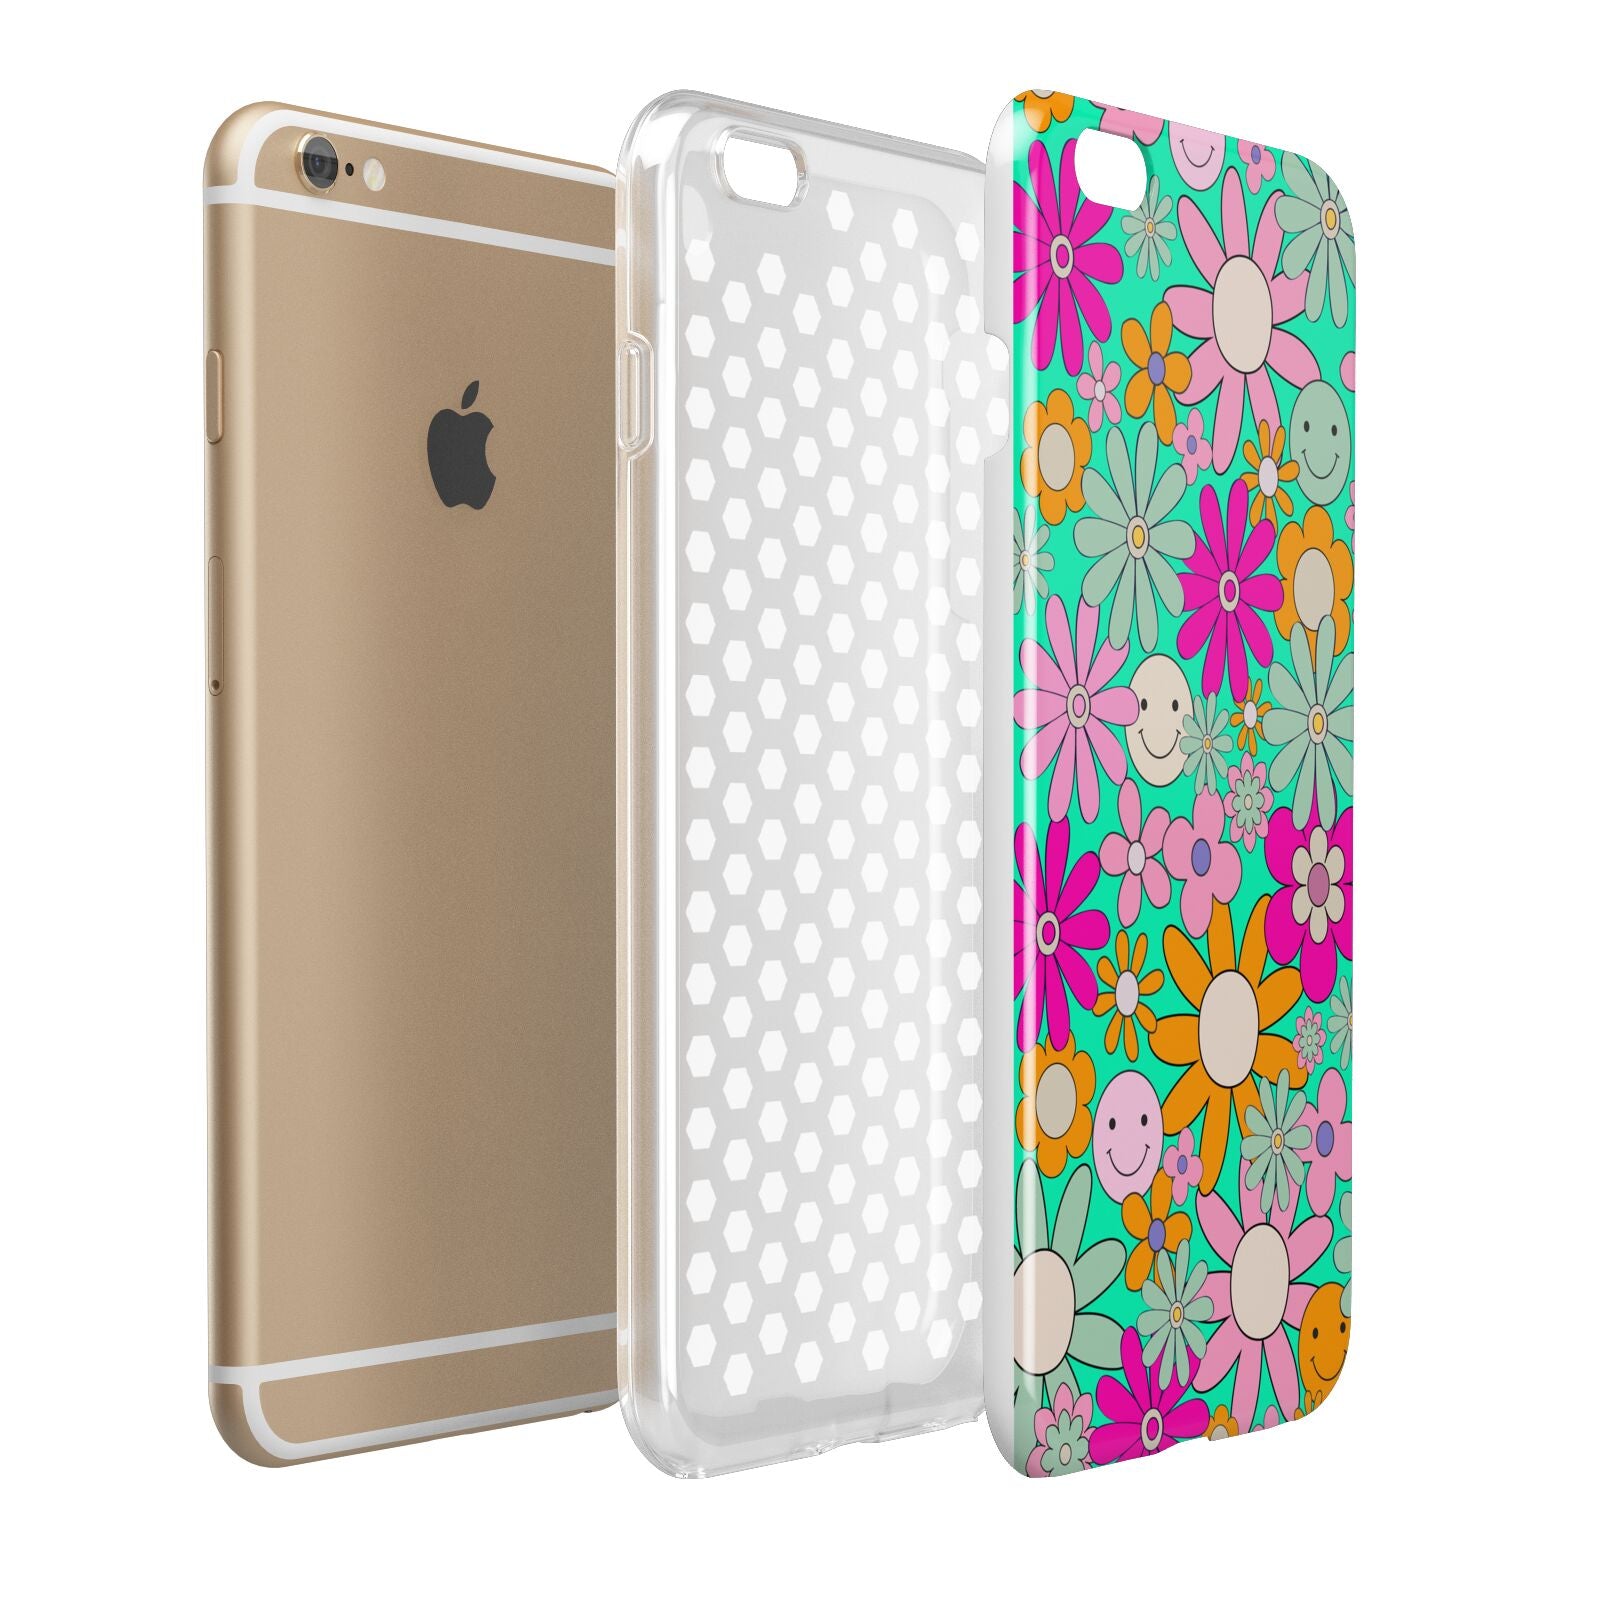 Hippy Floral Apple iPhone 6 Plus 3D Tough Case Expand Detail Image